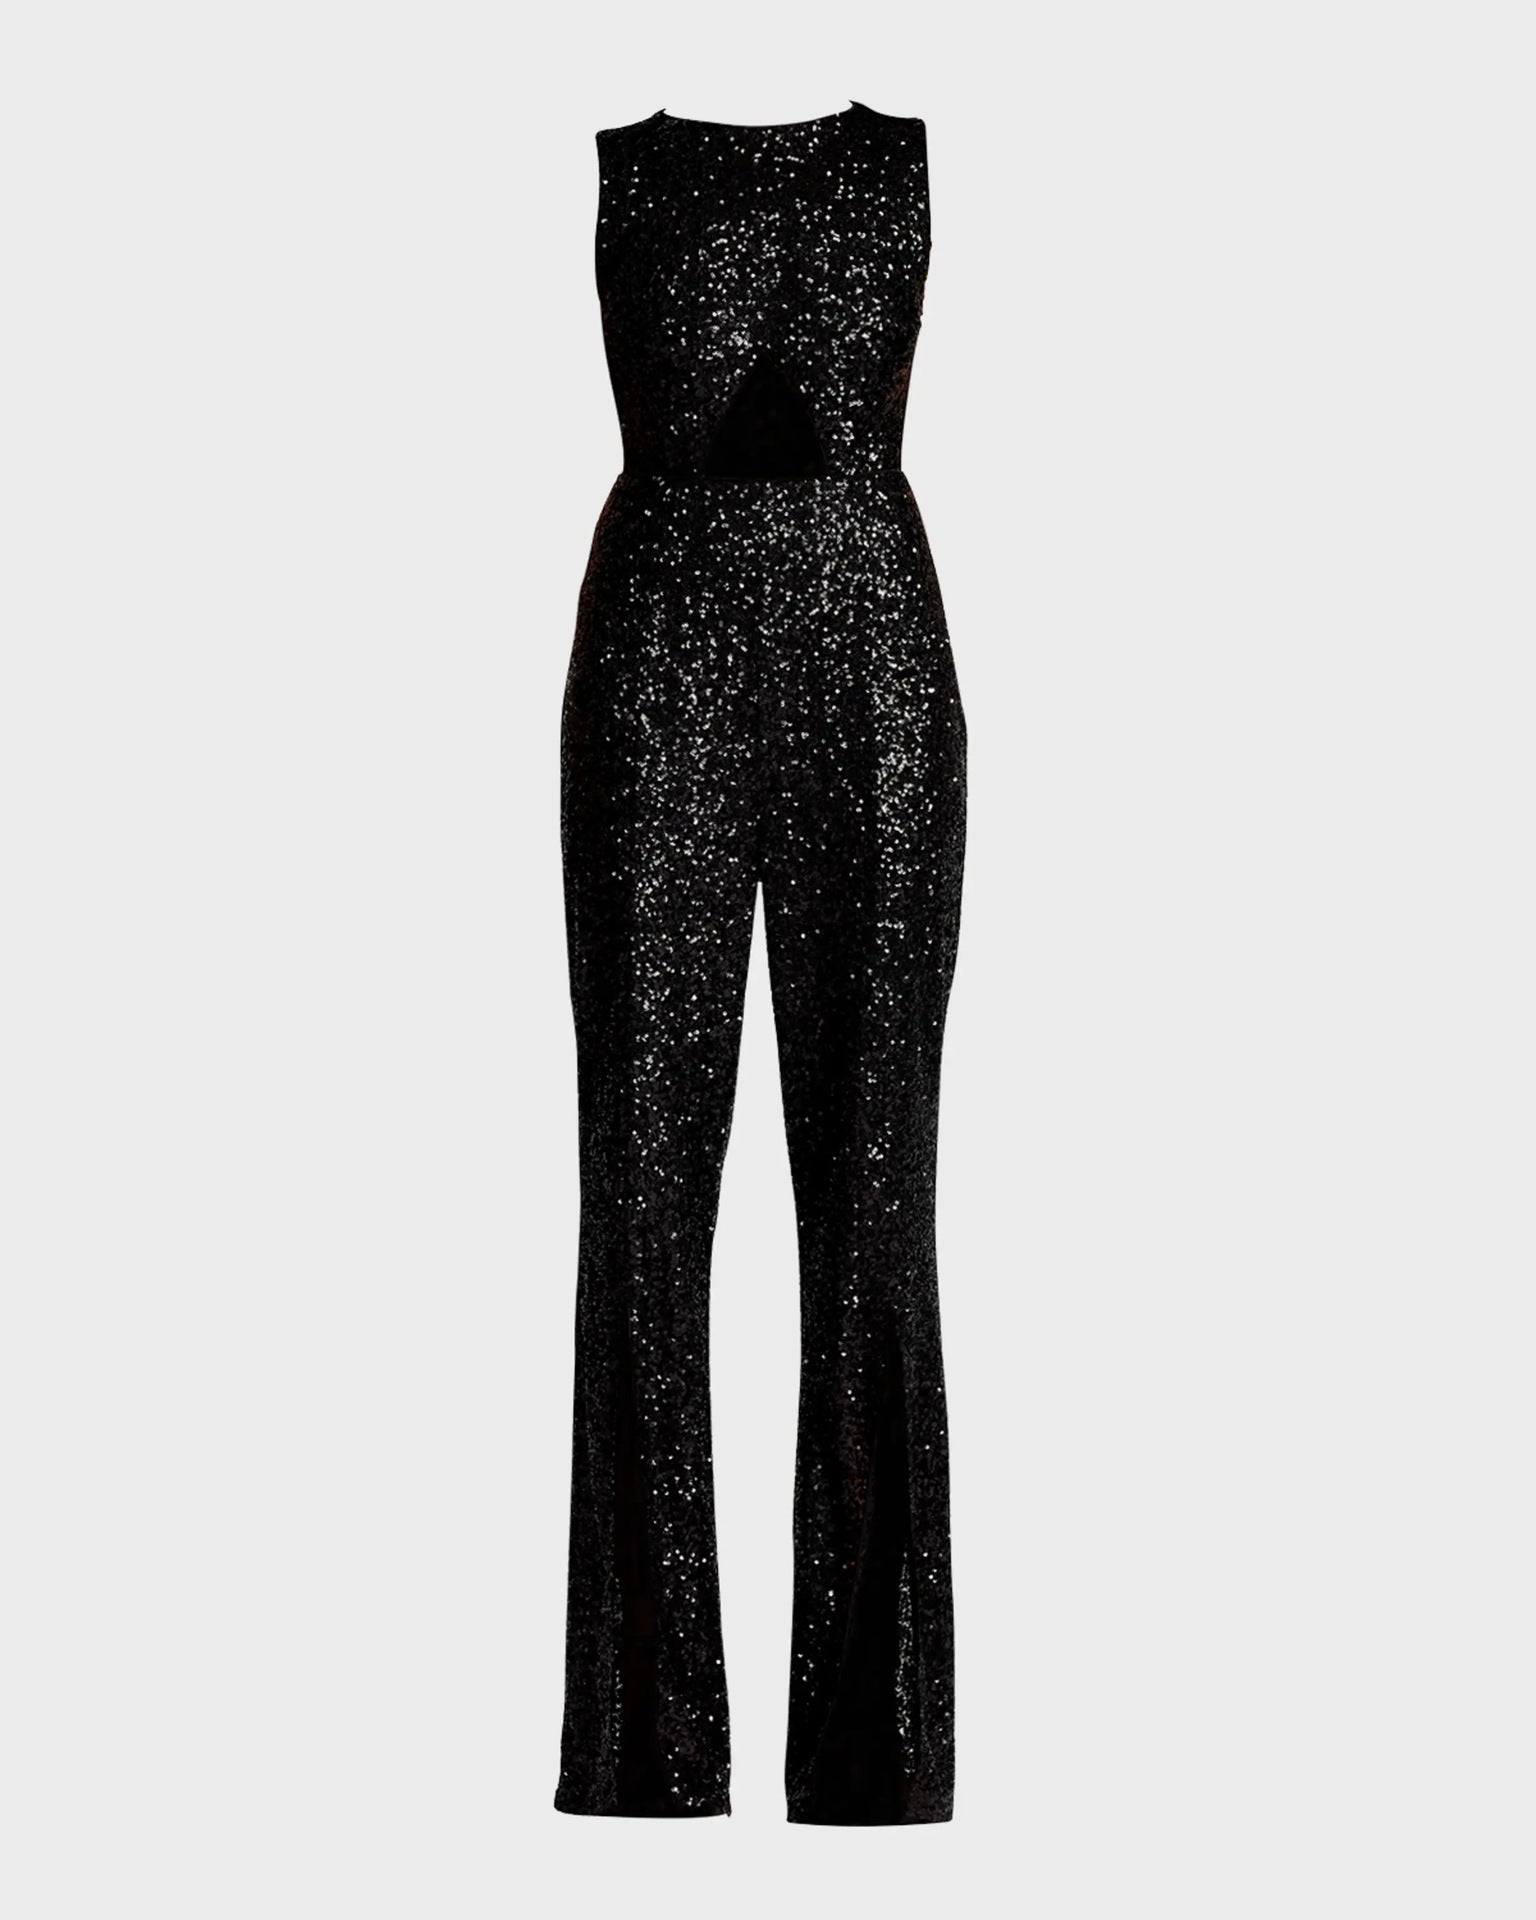 Women's Autumn Black Paillette Sleeveless Slim Fit Jumpsuits